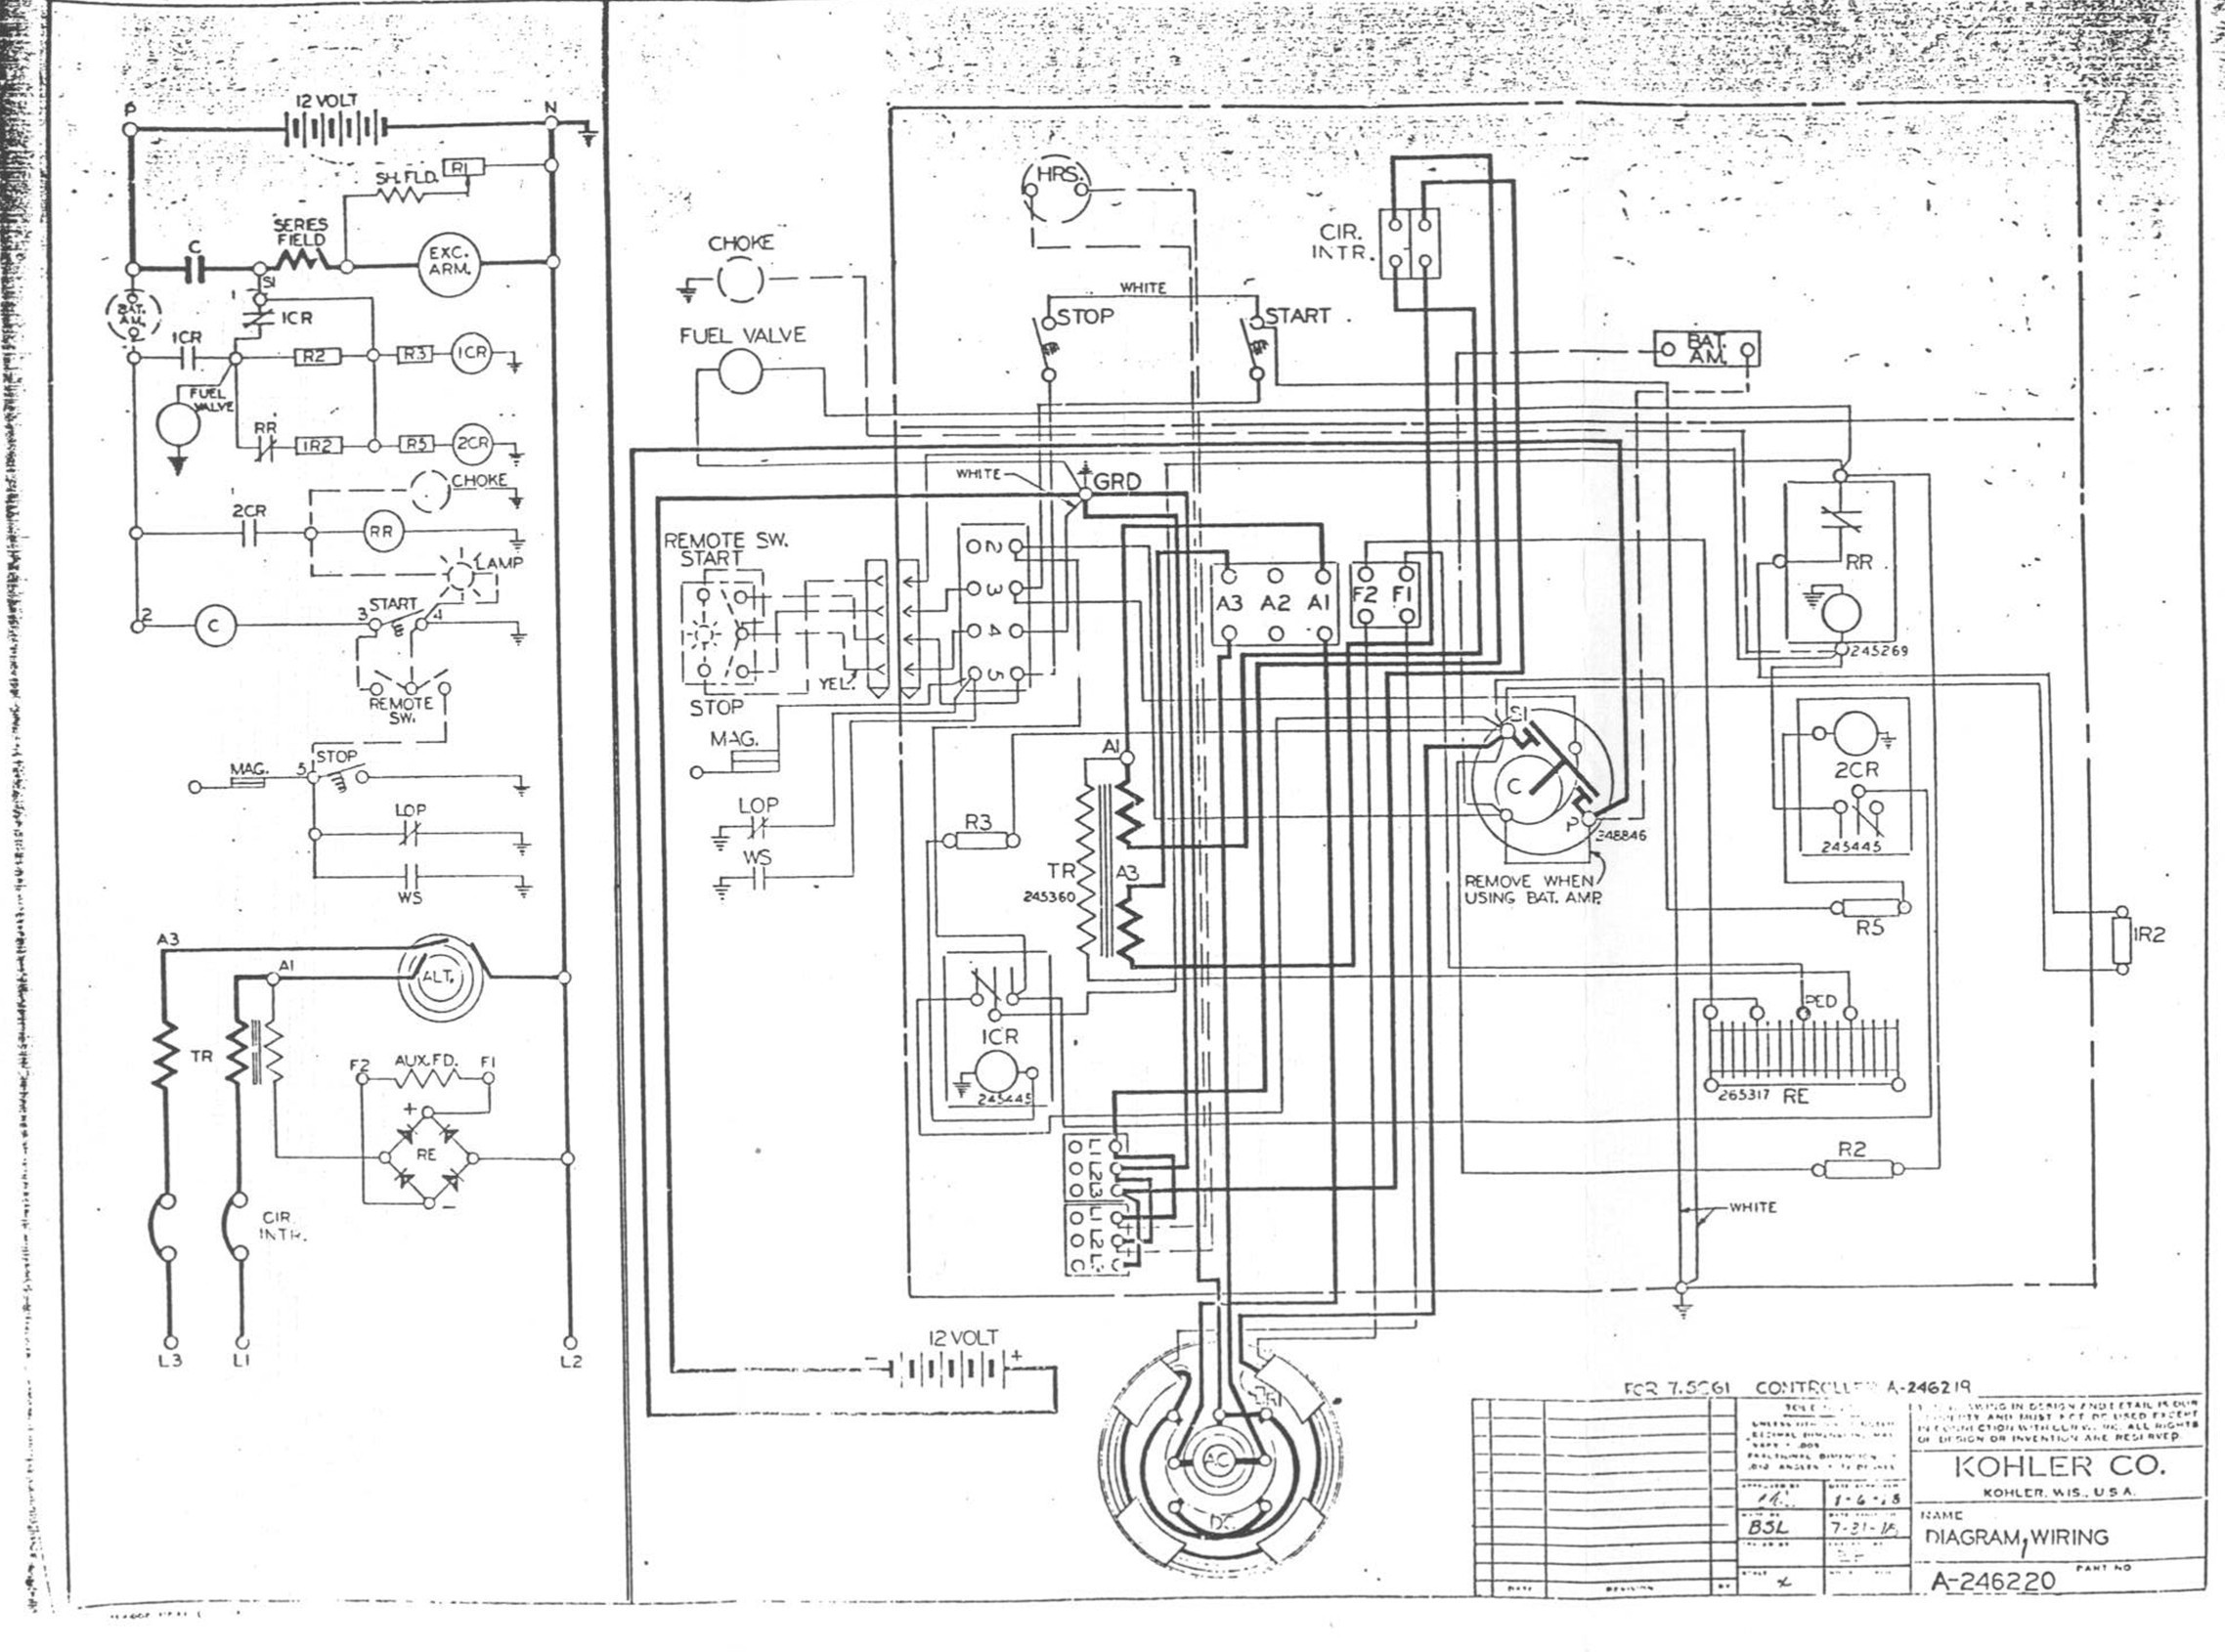 Kohler Generator Wiring Diagram Wiring Diagrams for Gibson Guitars Inspirational Wiring Diagram for Of Kohler Generator Wiring Diagram